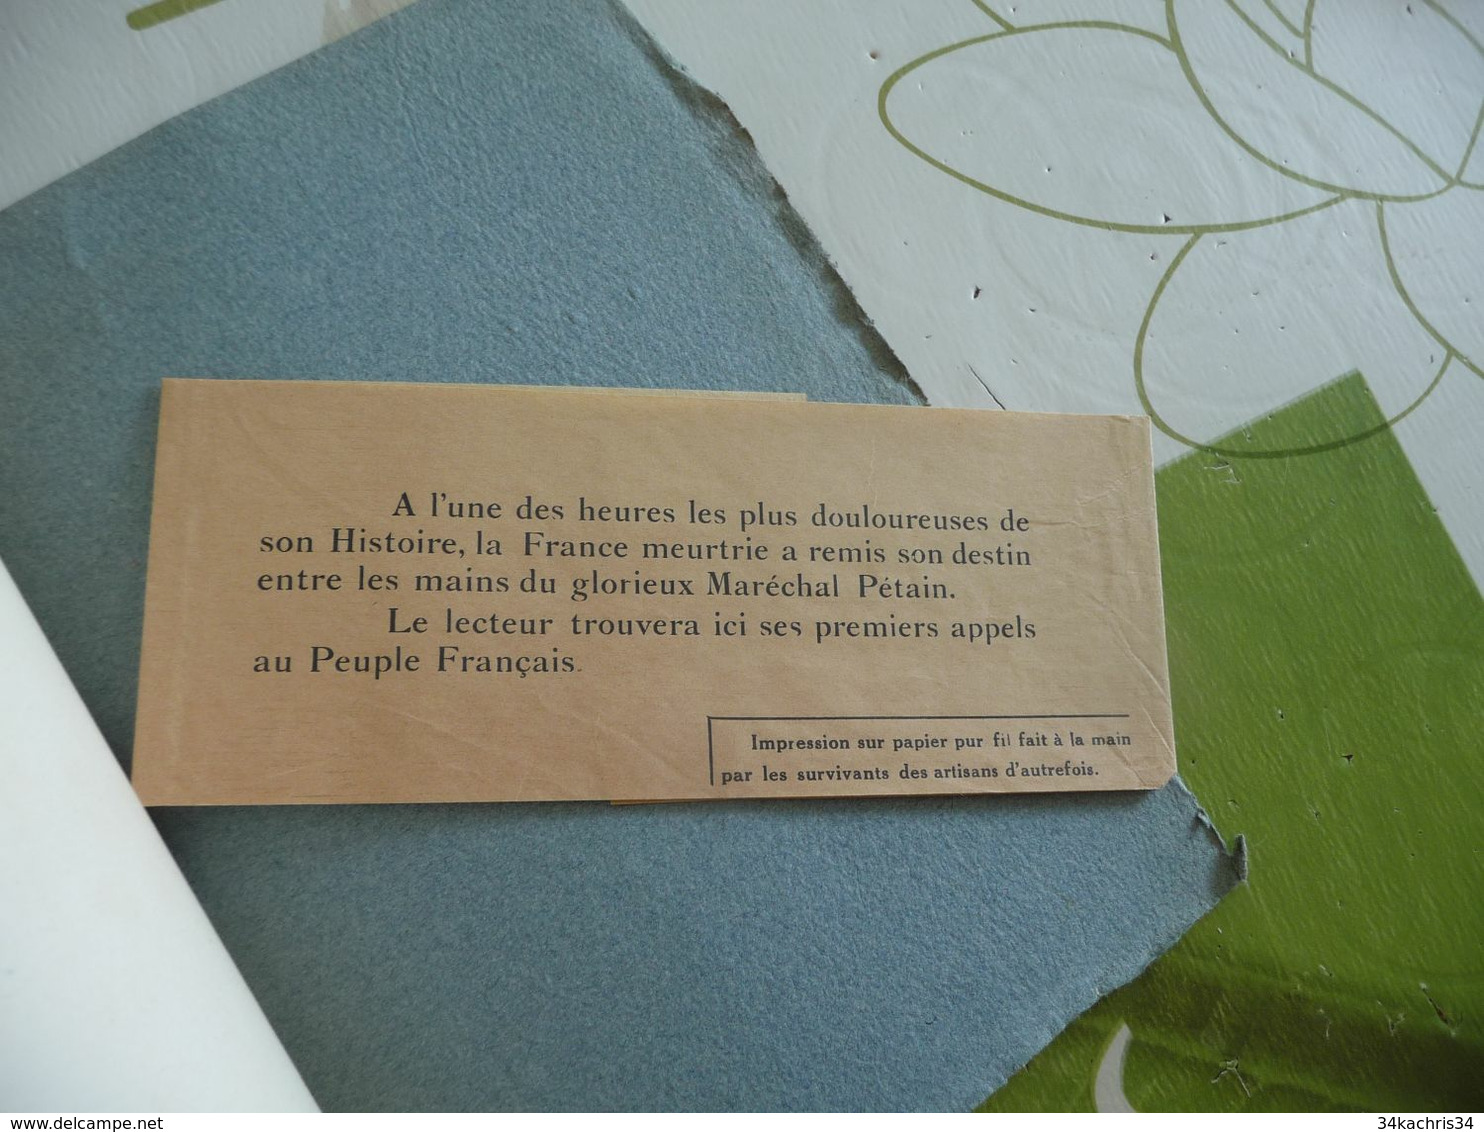 Pages d'Histoire Les Appels du Maréchal Pétain Juin 1940 Papier Fil d'Auvergne édit Moulins d'Auvergne